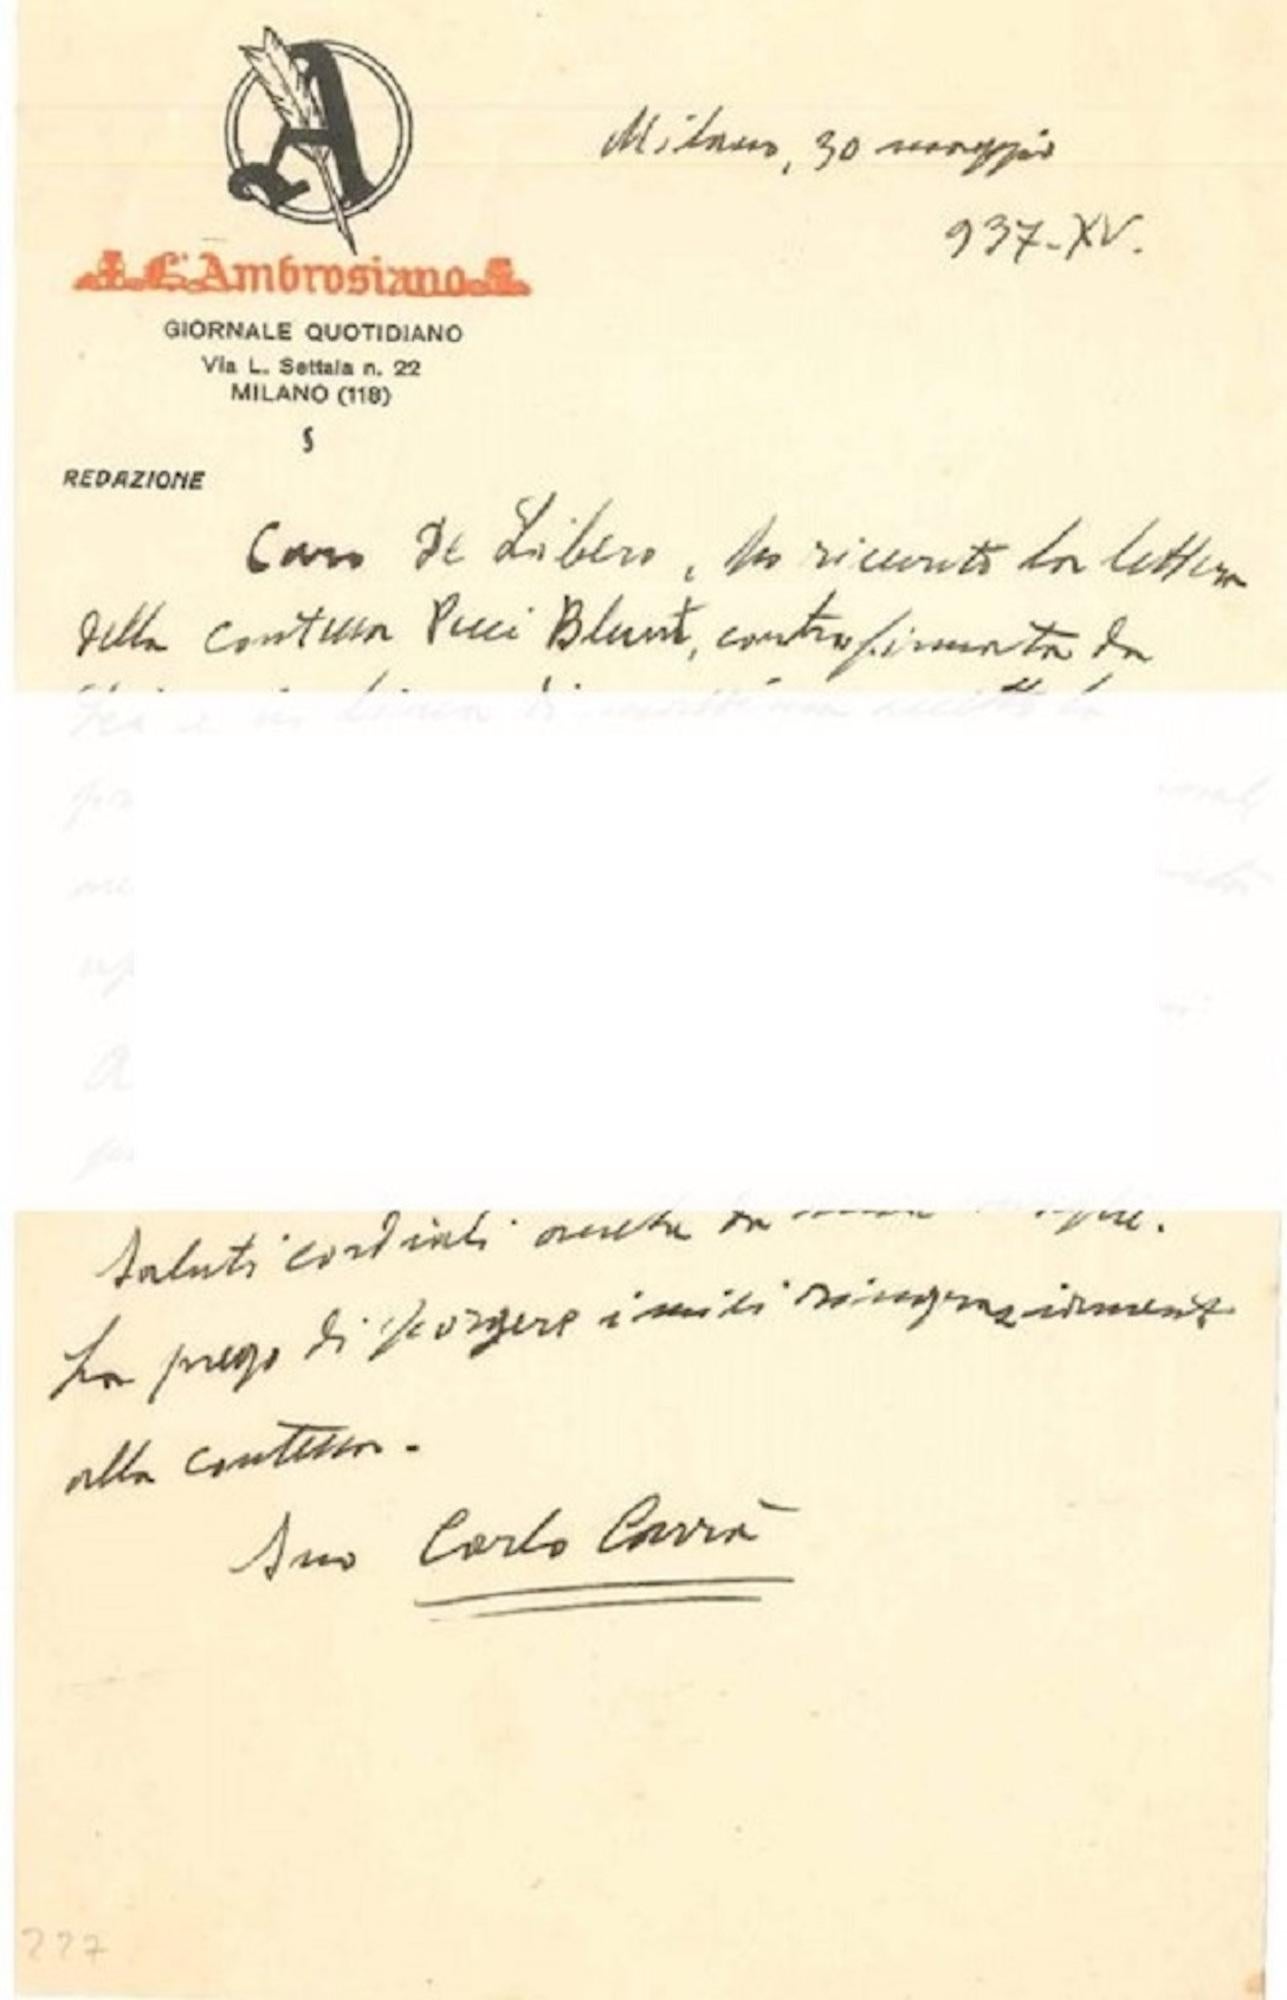 « À propos de l'Exihibition de New York » - Lettre de C. Carr à L. de Libero - 1937